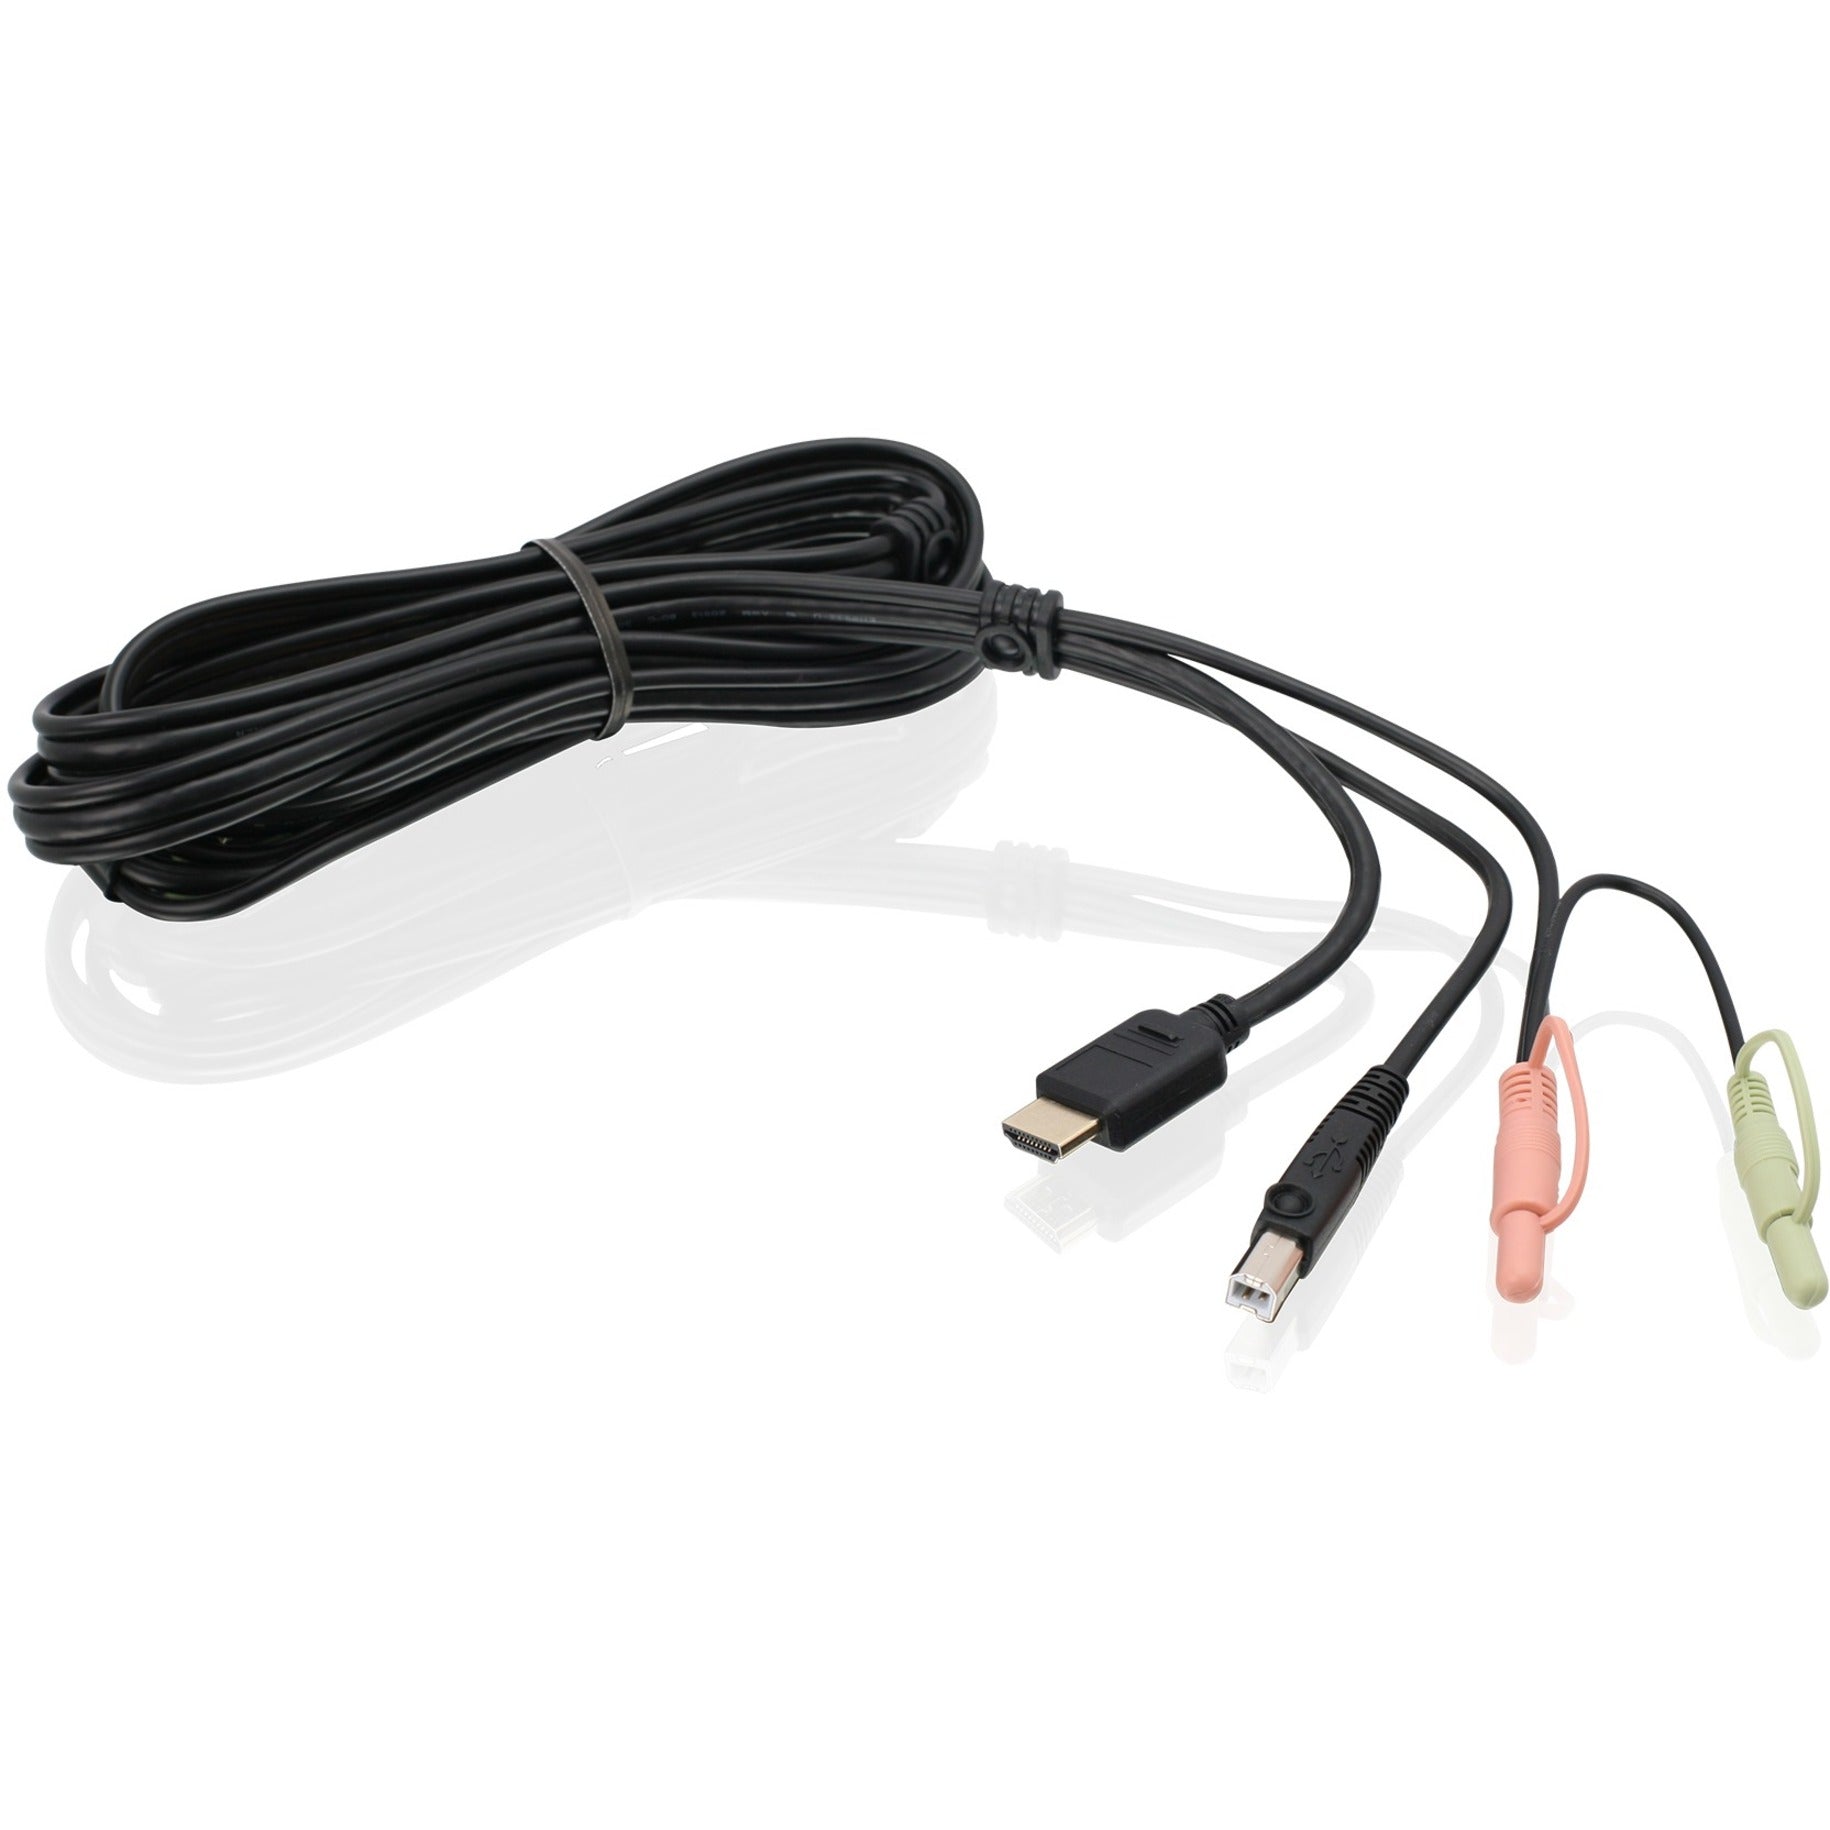 كابل KVM HDMI بطول 6 أقدام مع USB وصوت ، متوافق مع TAA IOGEAR G2L802U أيوجير لا تتضمن النص الإنجليزي.